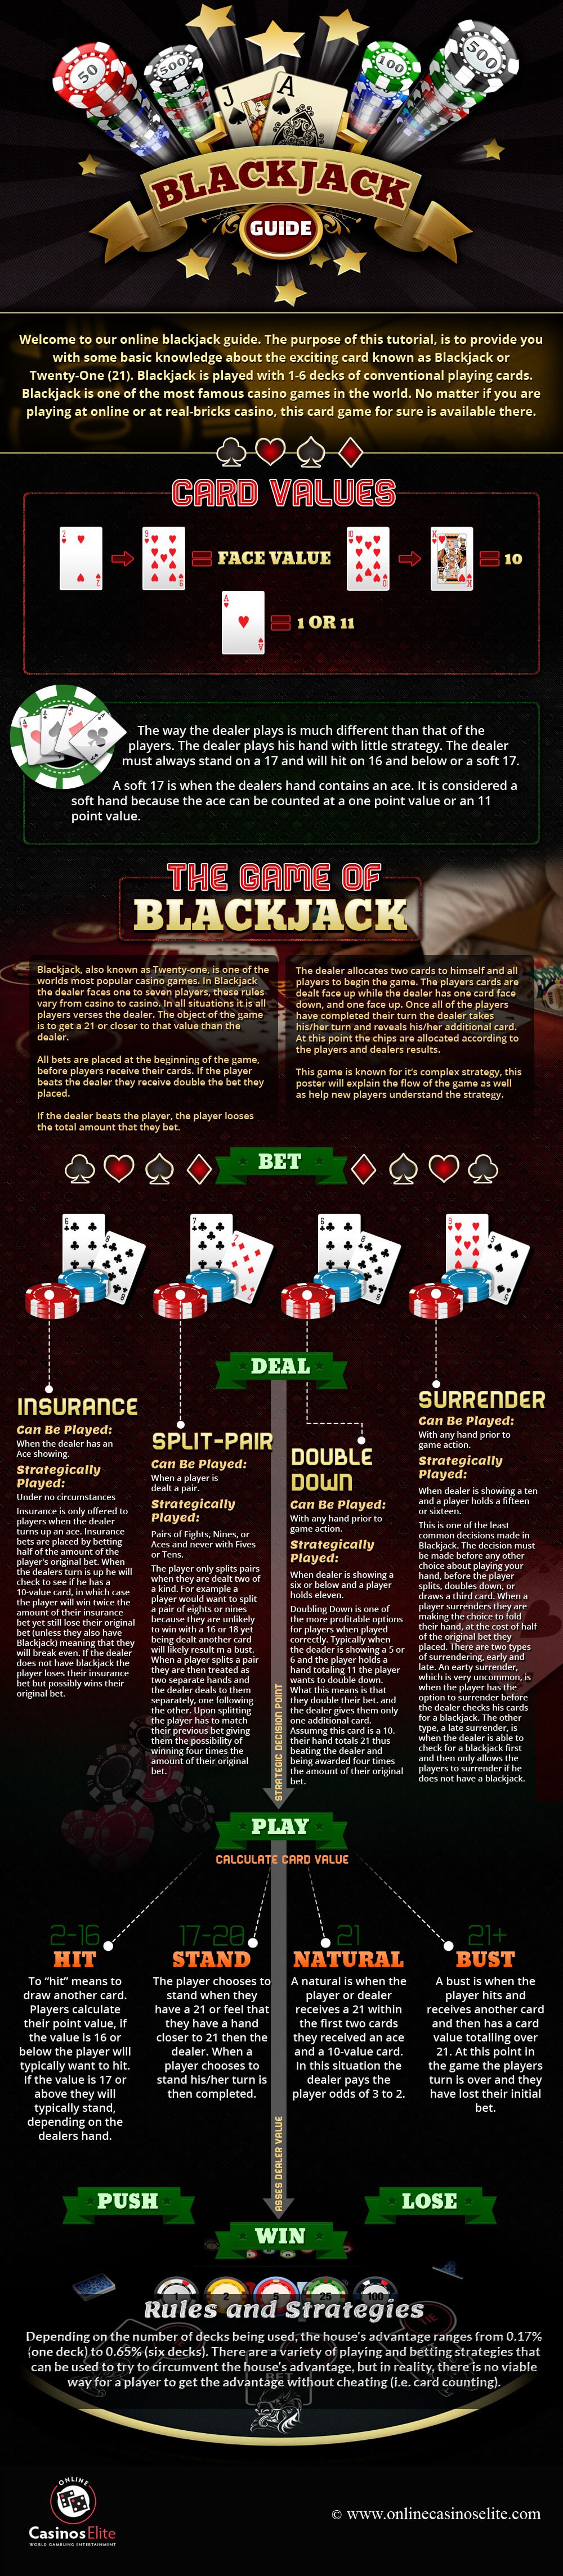 Blackjack Dealer Rules